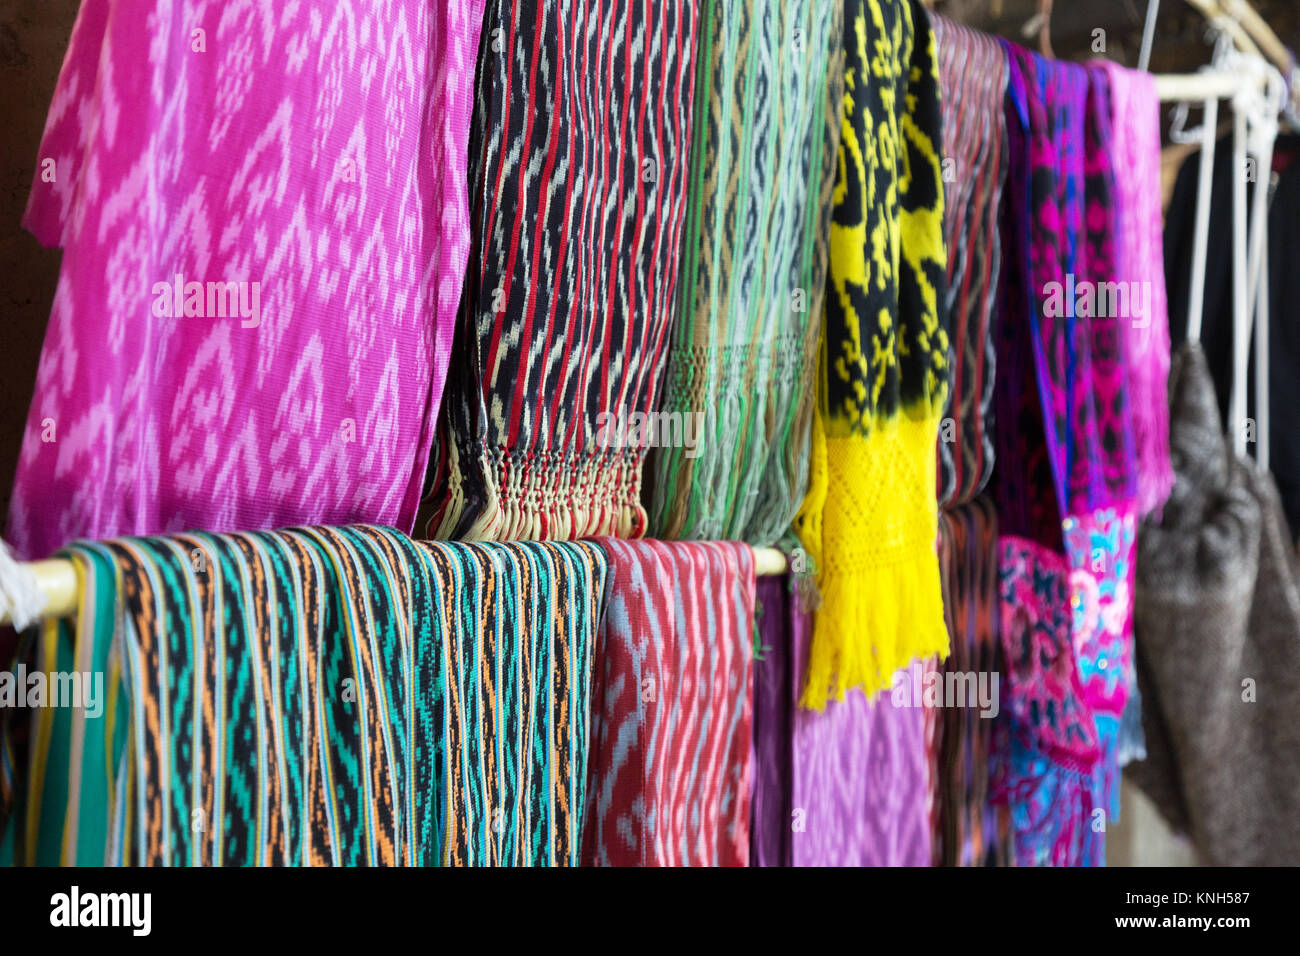 La laine d'alpaga colorés des textiles en vente, Cuenca, Équateur Amérique Latine Banque D'Images